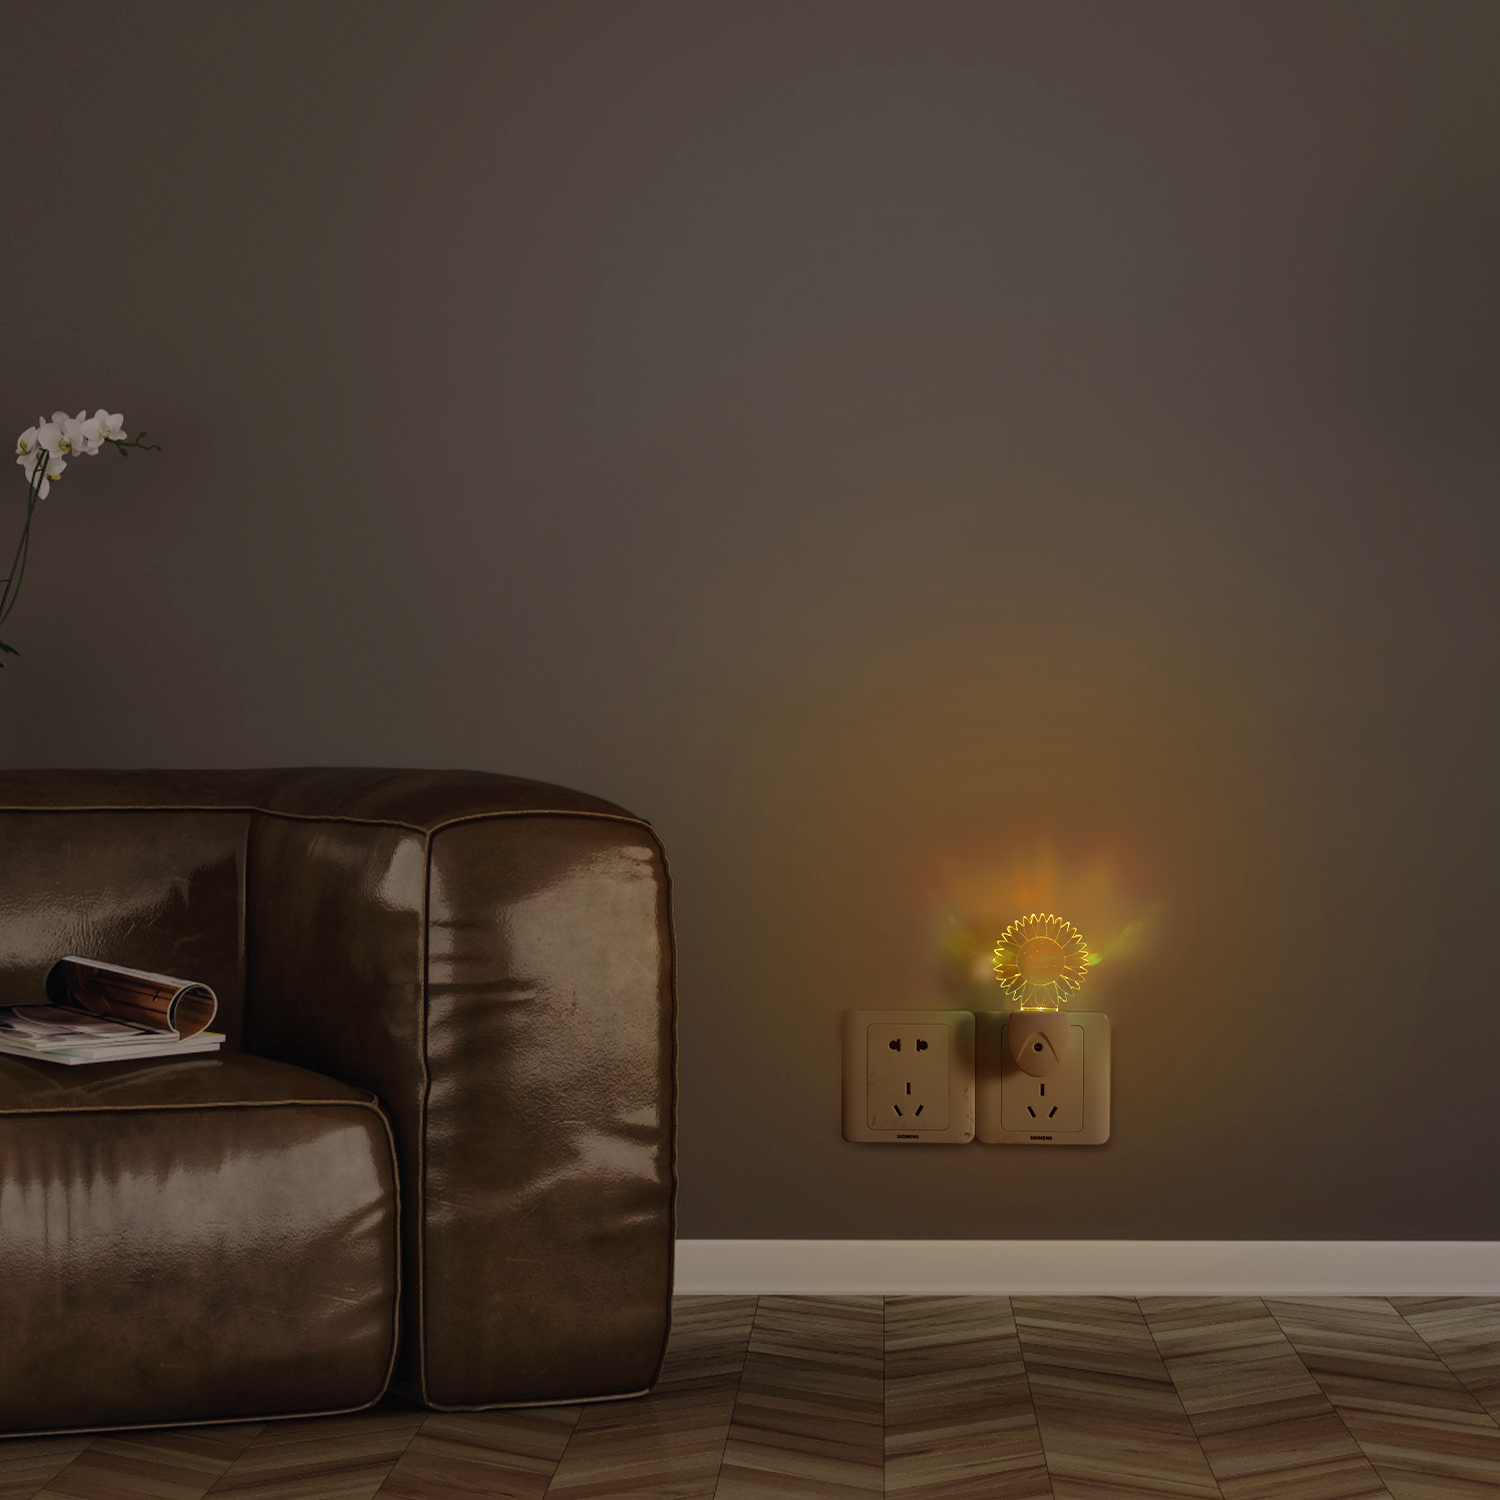 Aigostar Luz nocturna LED - 5 x Quitamiedos infantil, sensor de oscuridad, Multicolor, 0.5 W, RGB 7 colores, enchufable, perfecto para pasillos o habitaciones infantiles. Forma de girasol.